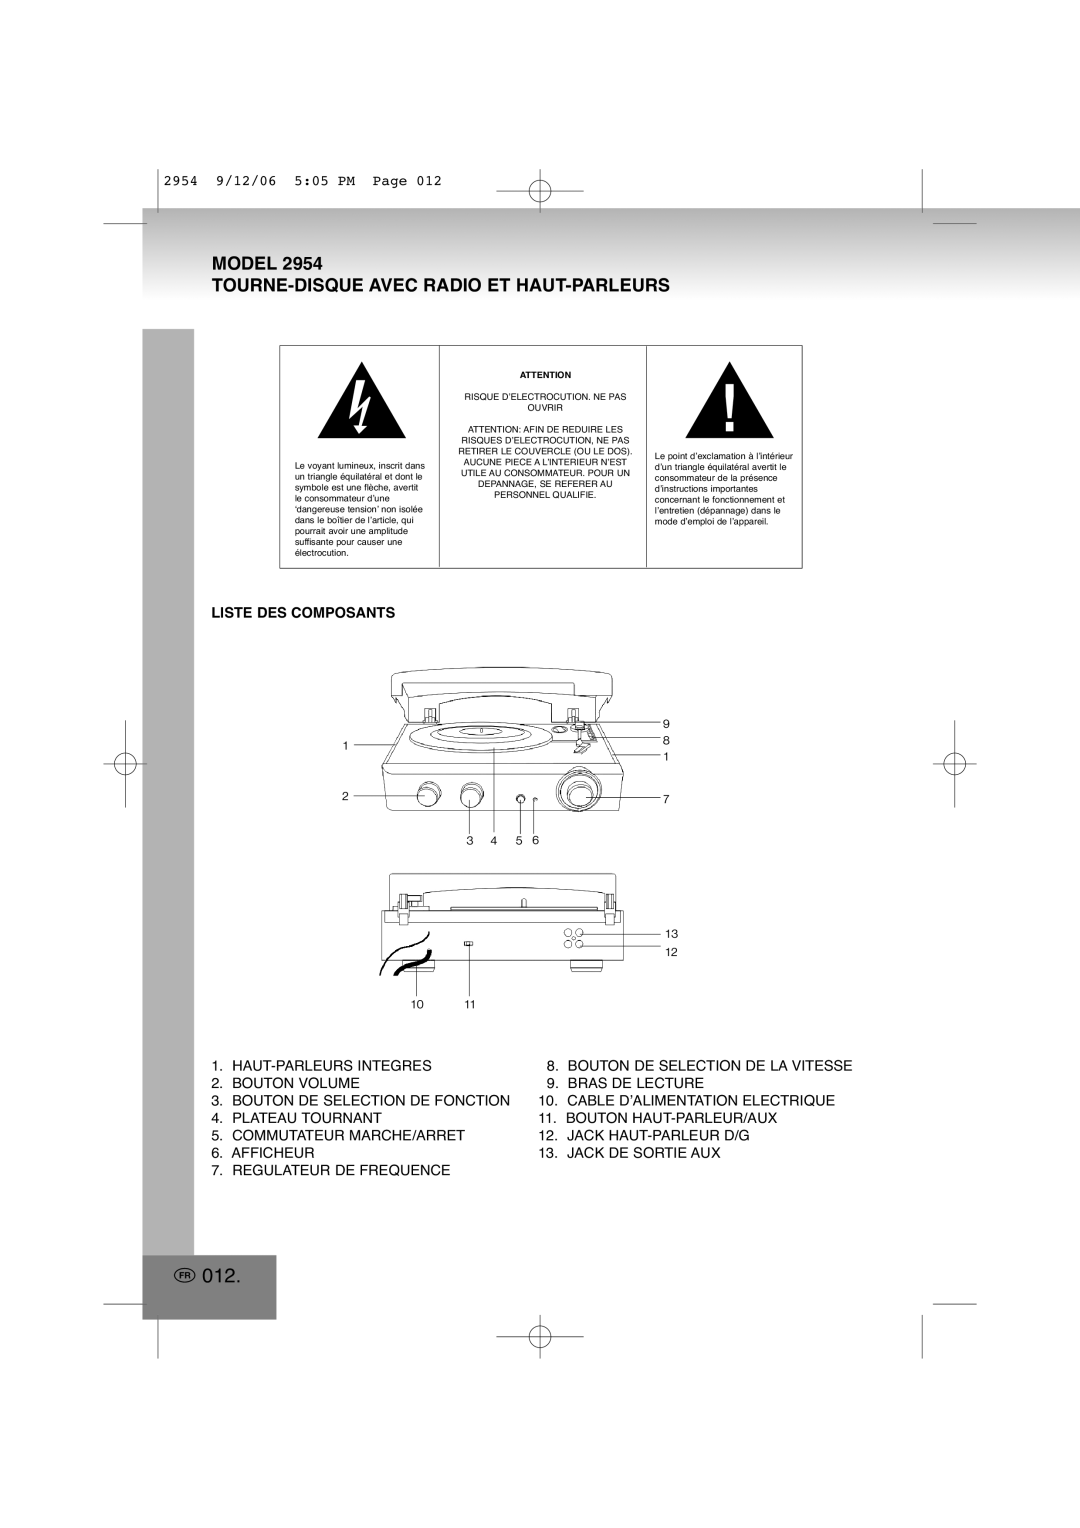 Elta 2954 manual Model Tourne-Disqueavec Radio Et Haut-Parleurs, Liste Des Composants 